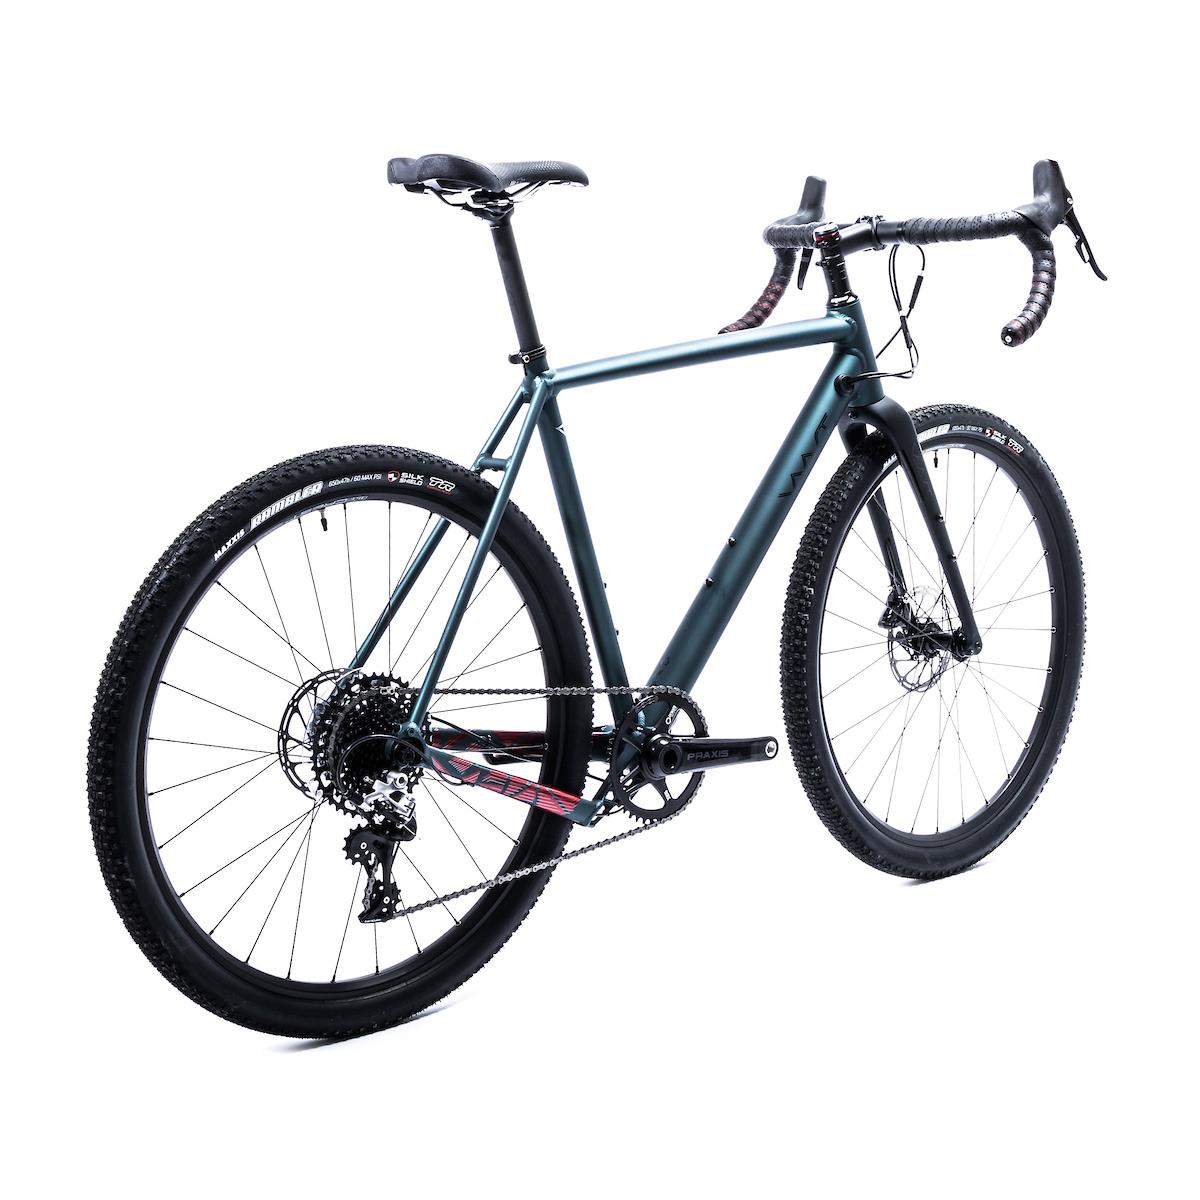 Vaast A/1 650B RIVAL AXS Велосипед, синий, L, 54 см